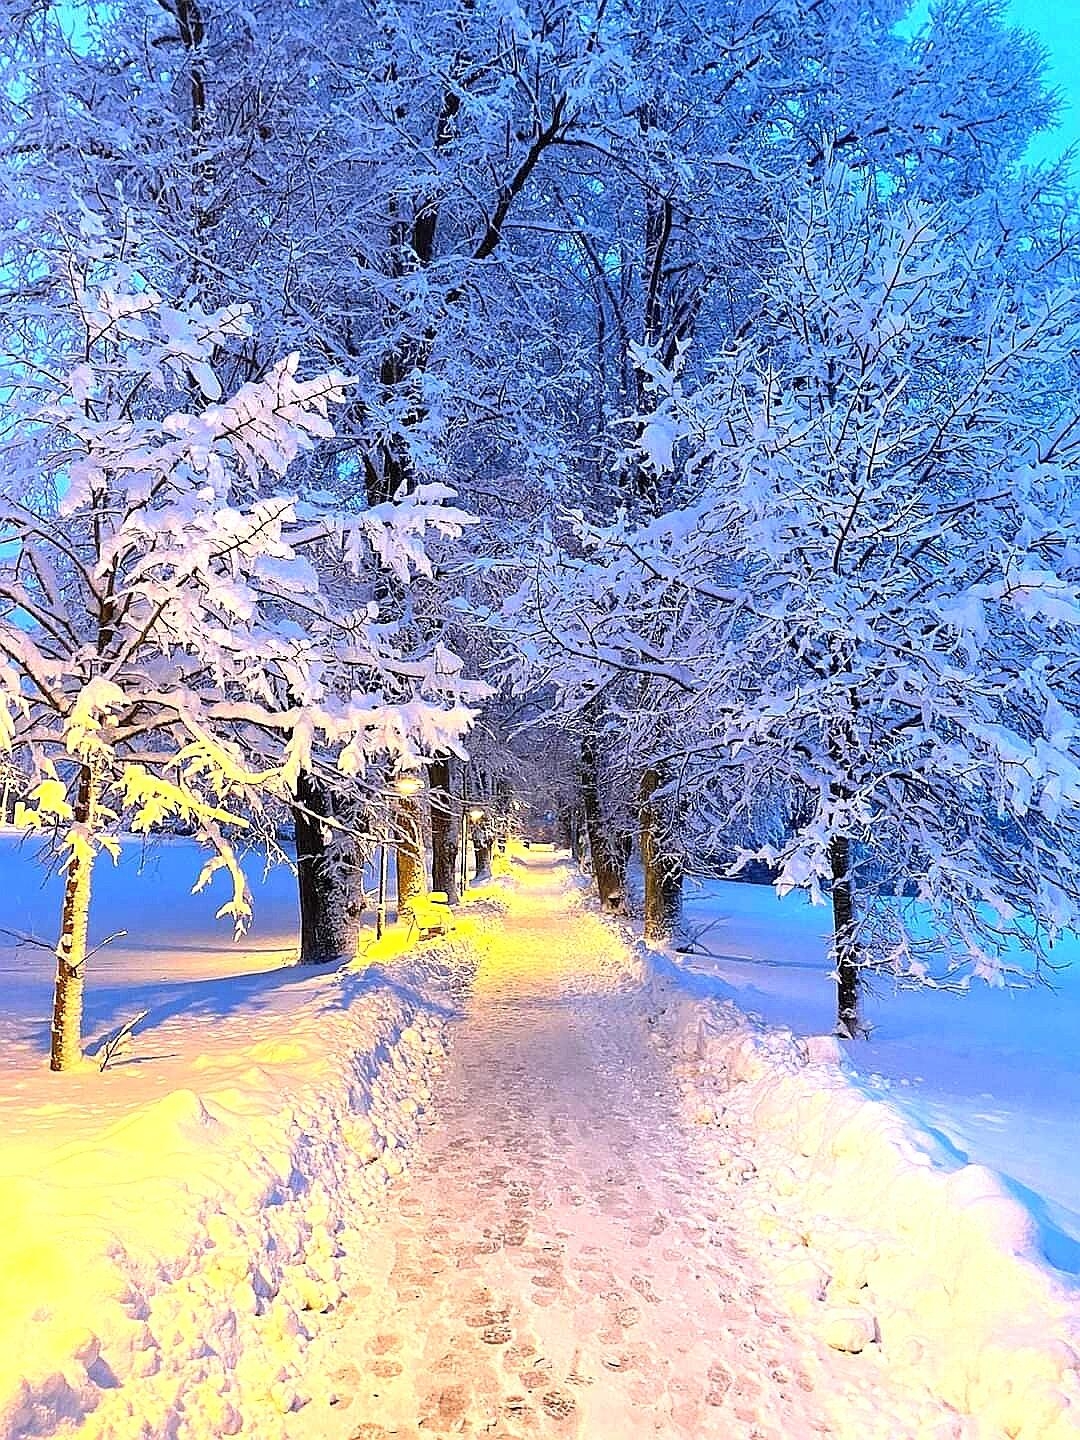 Wunderschöne Wintermomente....
#snow
#Winter 
#wintwrwunderland
#naturliebe 